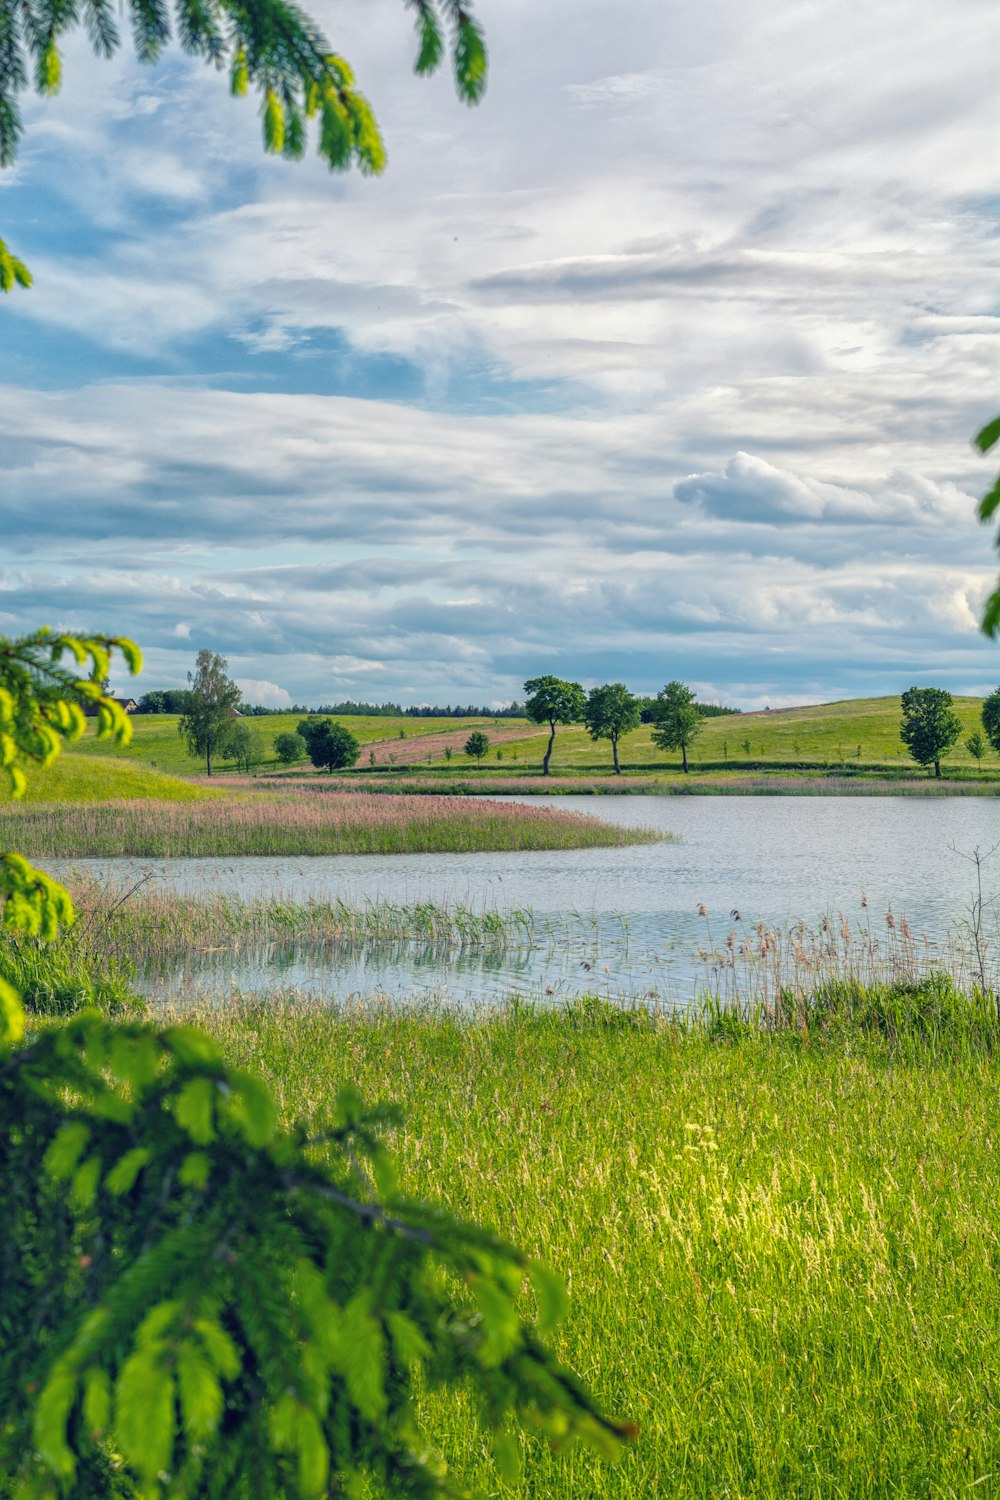 Teich in der Nähe einer grünen Wiese unter blauem und weißem Himmel während des Tages